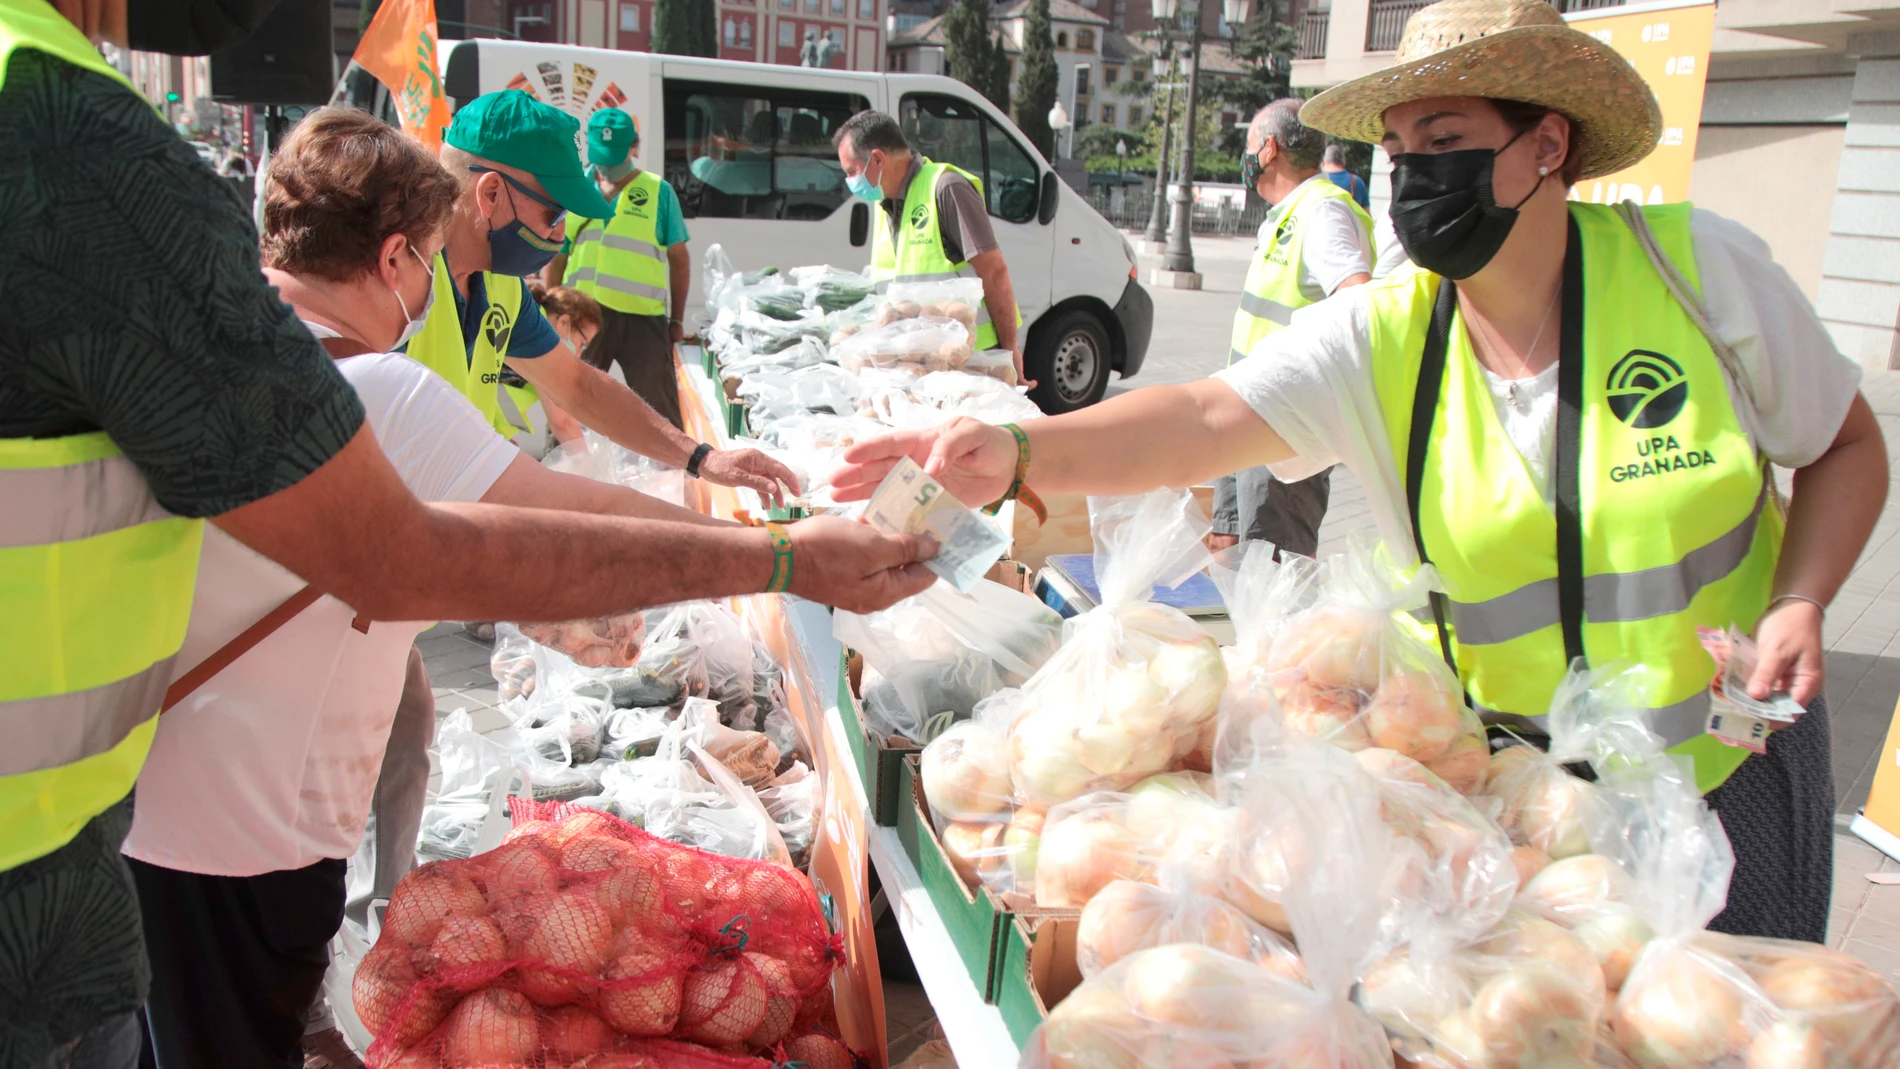 La Unión de Pequeños Agricultores (UPA) de Granada vende este viernes frutas y verduras a precios justos, por encima de lo que reciben los agricultores y más barato de lo que marcan los supermercados, como medida para combatir la especulación de precios